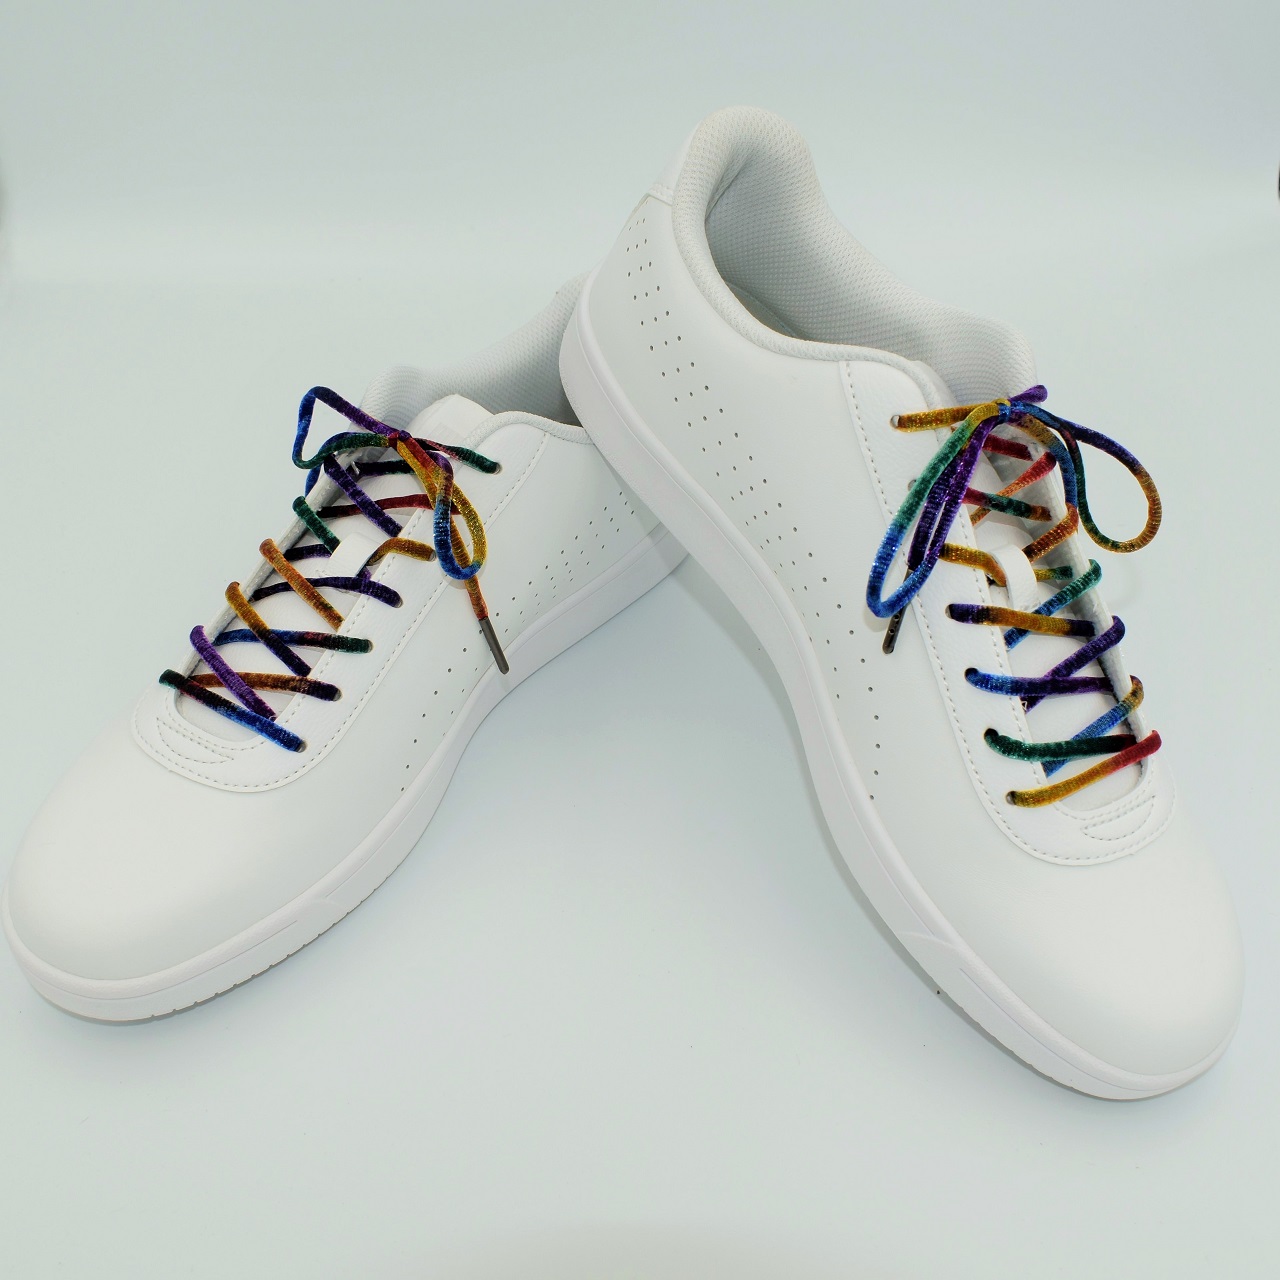 手編み用の糸を作る技術で作った靴紐をご紹介します。